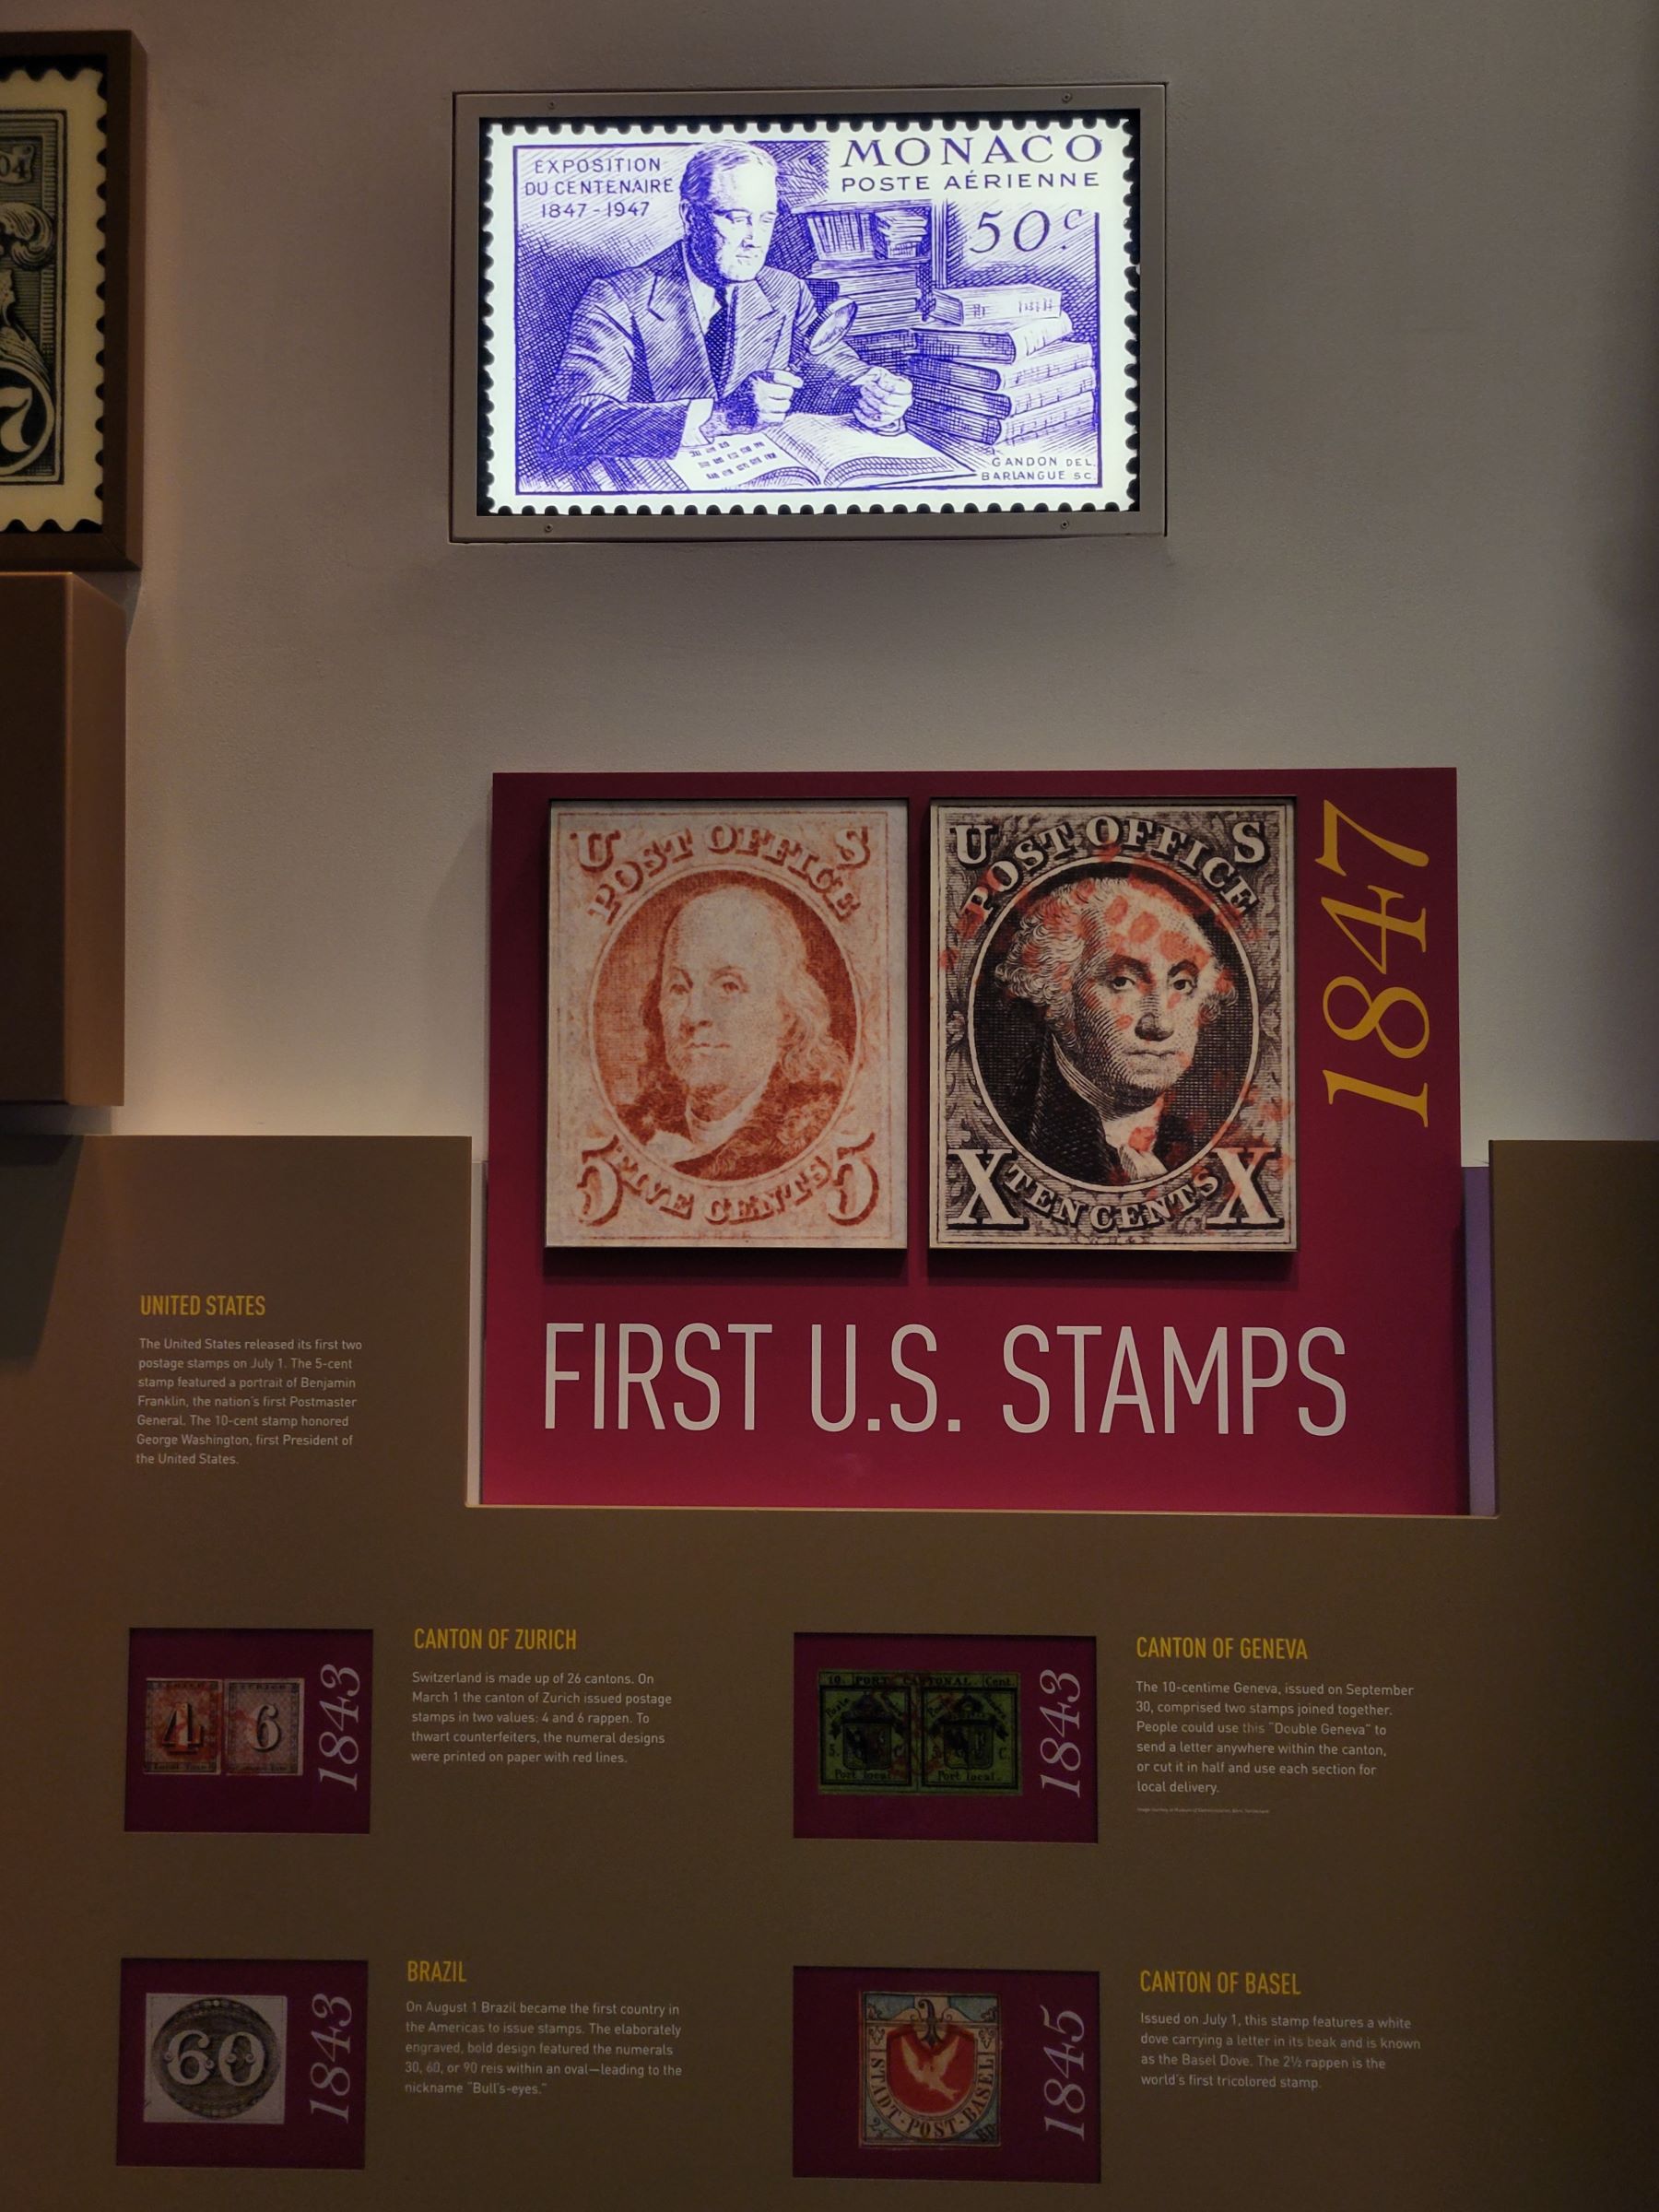 스미소니언 국립 우편박물관(National Postal Museum)에서 한국을 비롯한 전세계의 진귀한 우표 구경